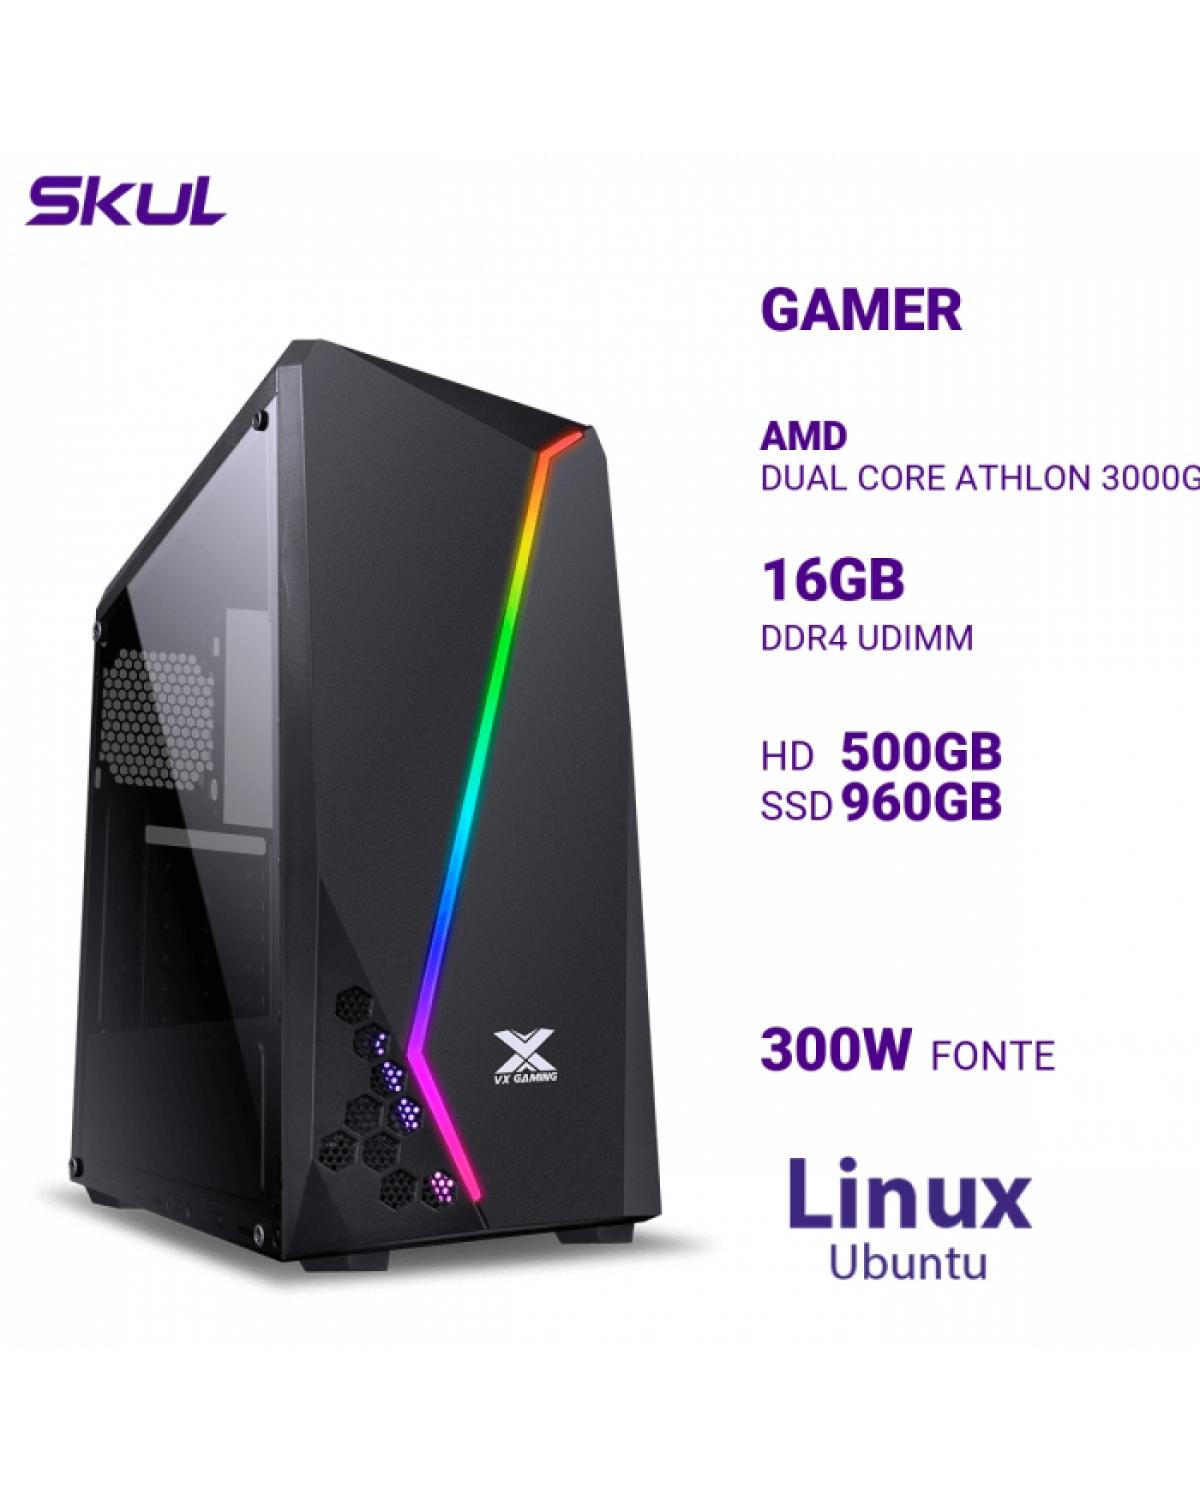 COMPUTADOR GAMER 1000 DUAL CORE ATHLON 3000G 3.50GHZ MEM 16GB DDR4 HD 500GB SSD 960GB FONTE 300W LINUX